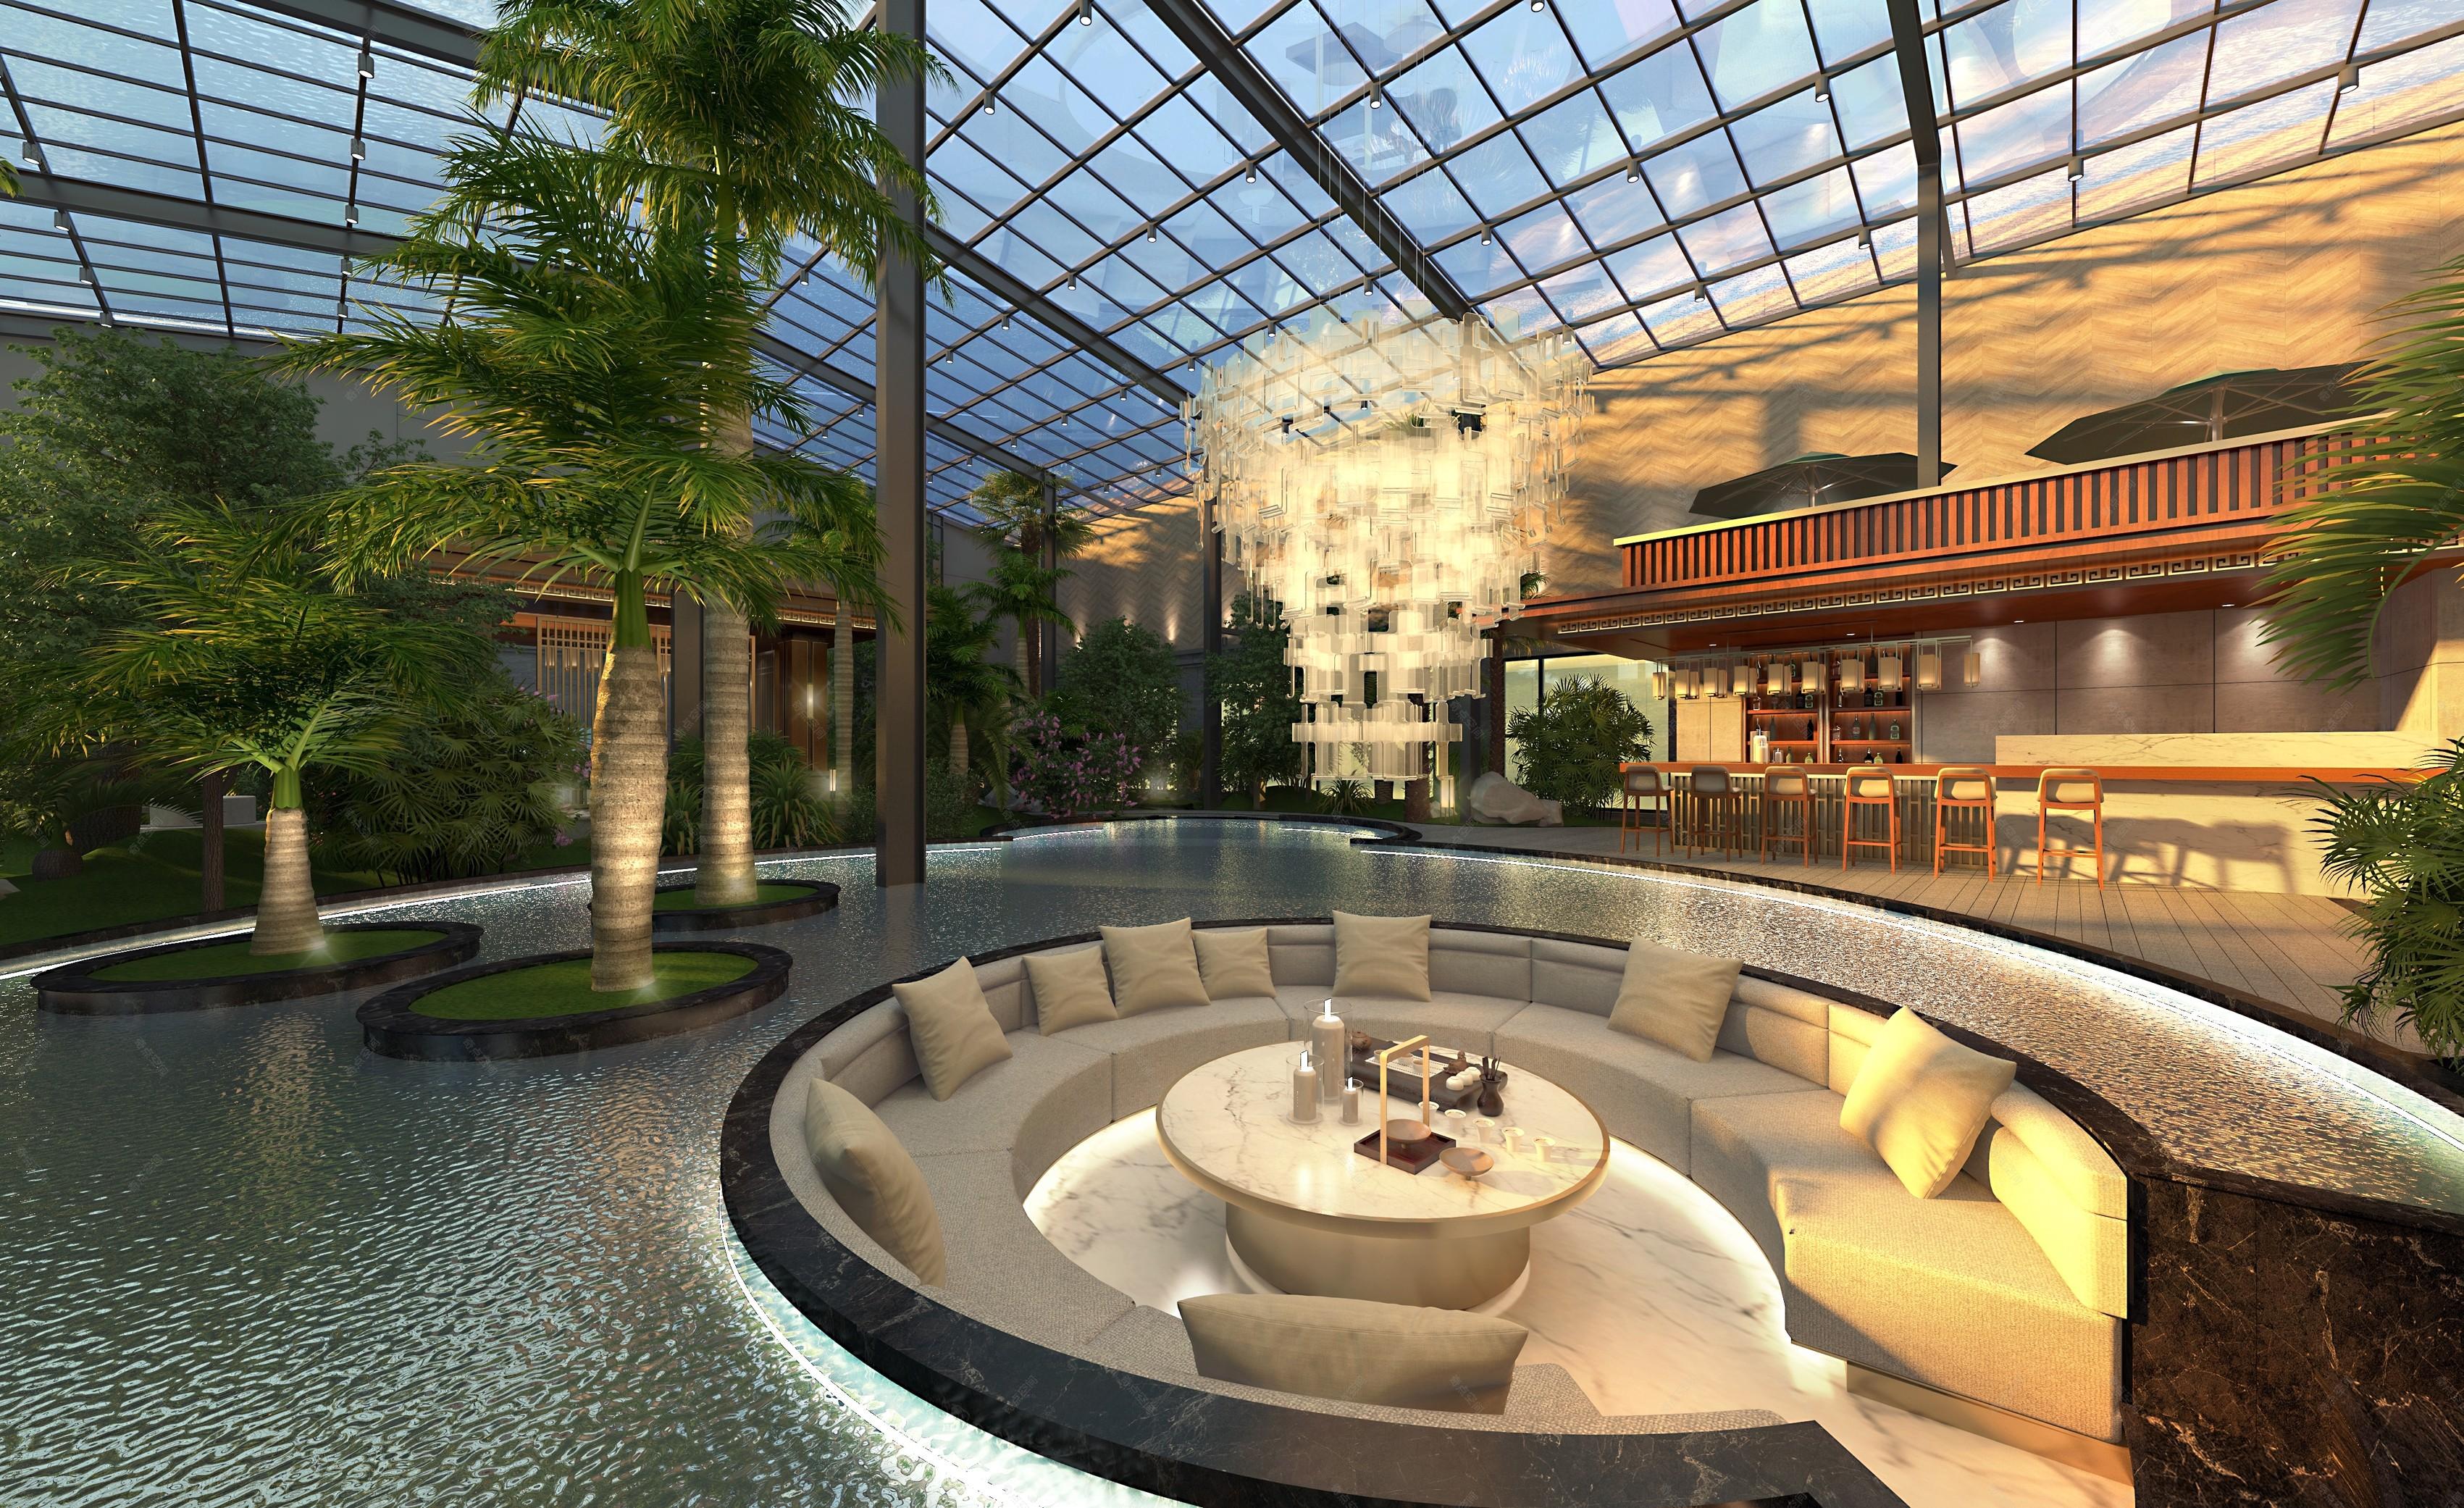 新中式阳光房 - 效果图交流区-建E室内设计网